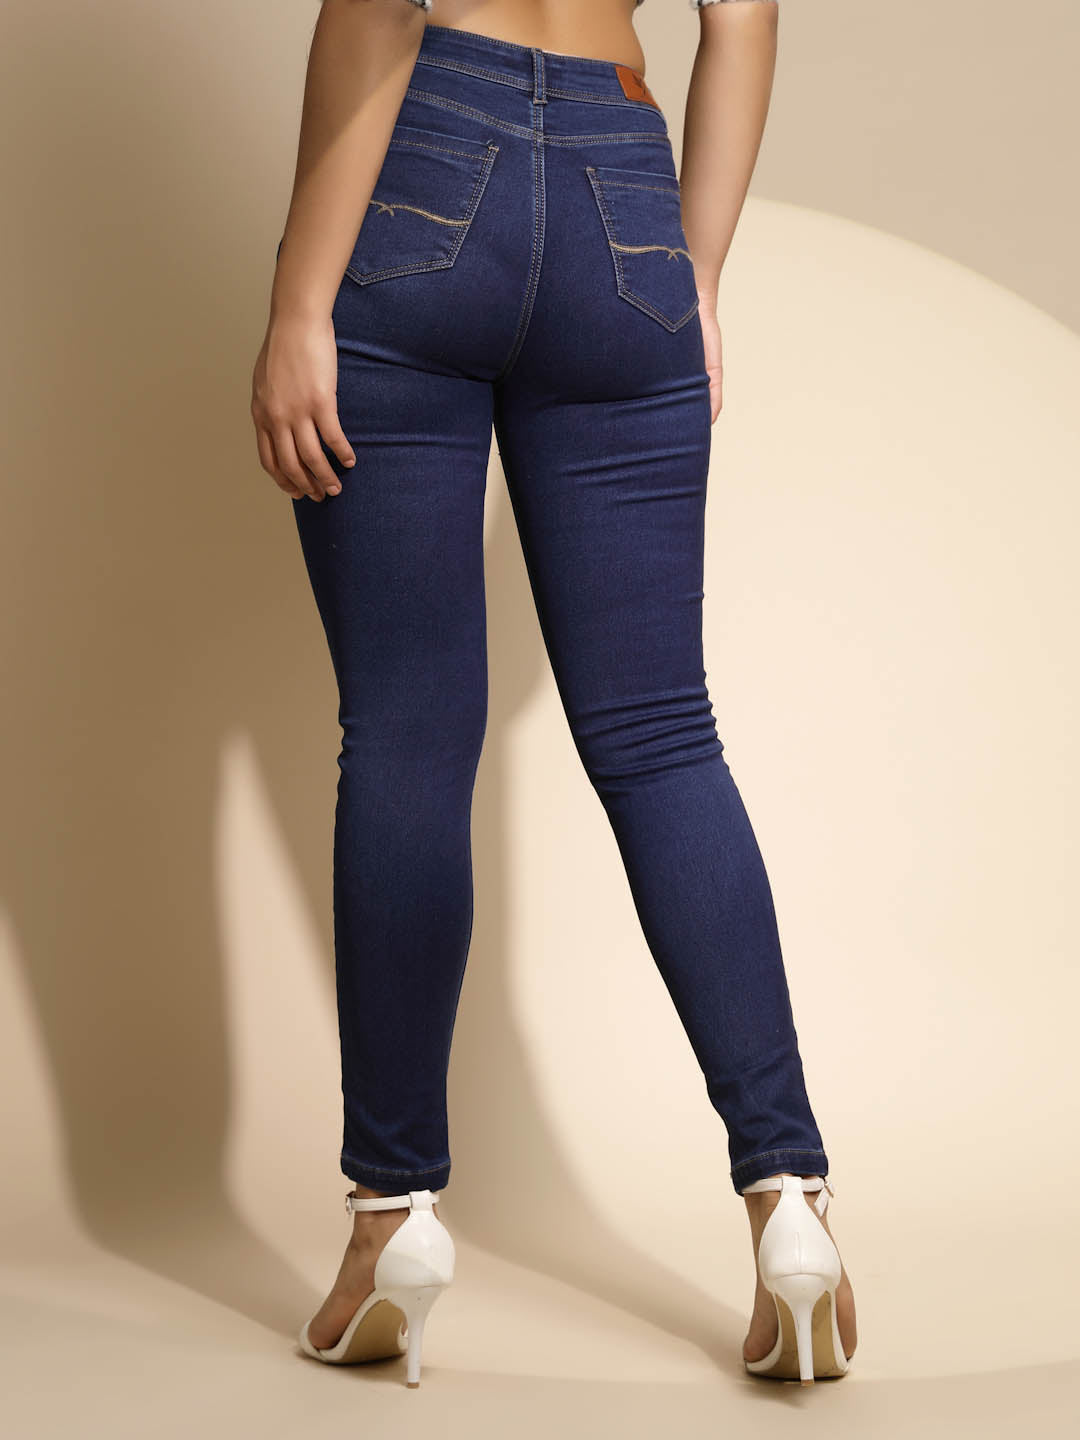 Dark Blue Jeans for Women